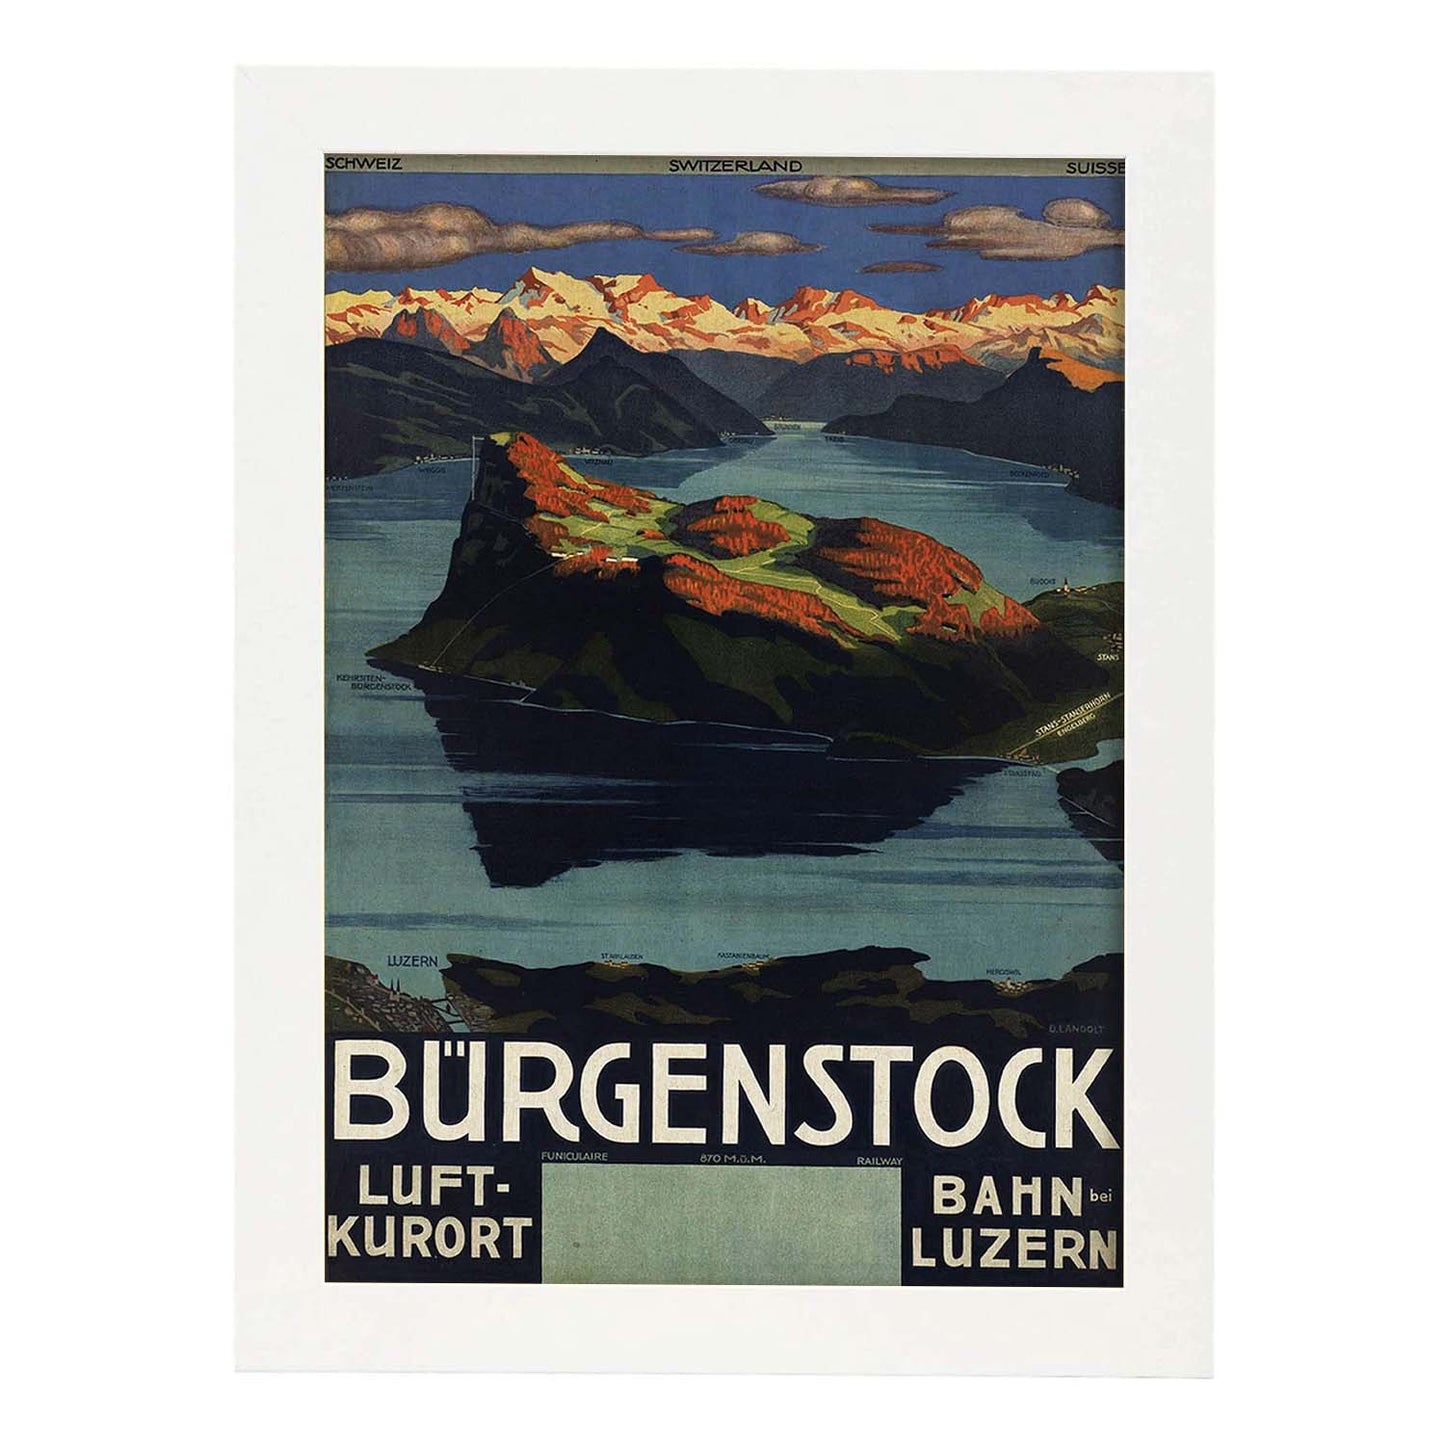 Poster vintage. Cartel vintage de Europa. Viaja a Burgenstock.-Artwork-Nacnic-A4-Marco Blanco-Nacnic Estudio SL